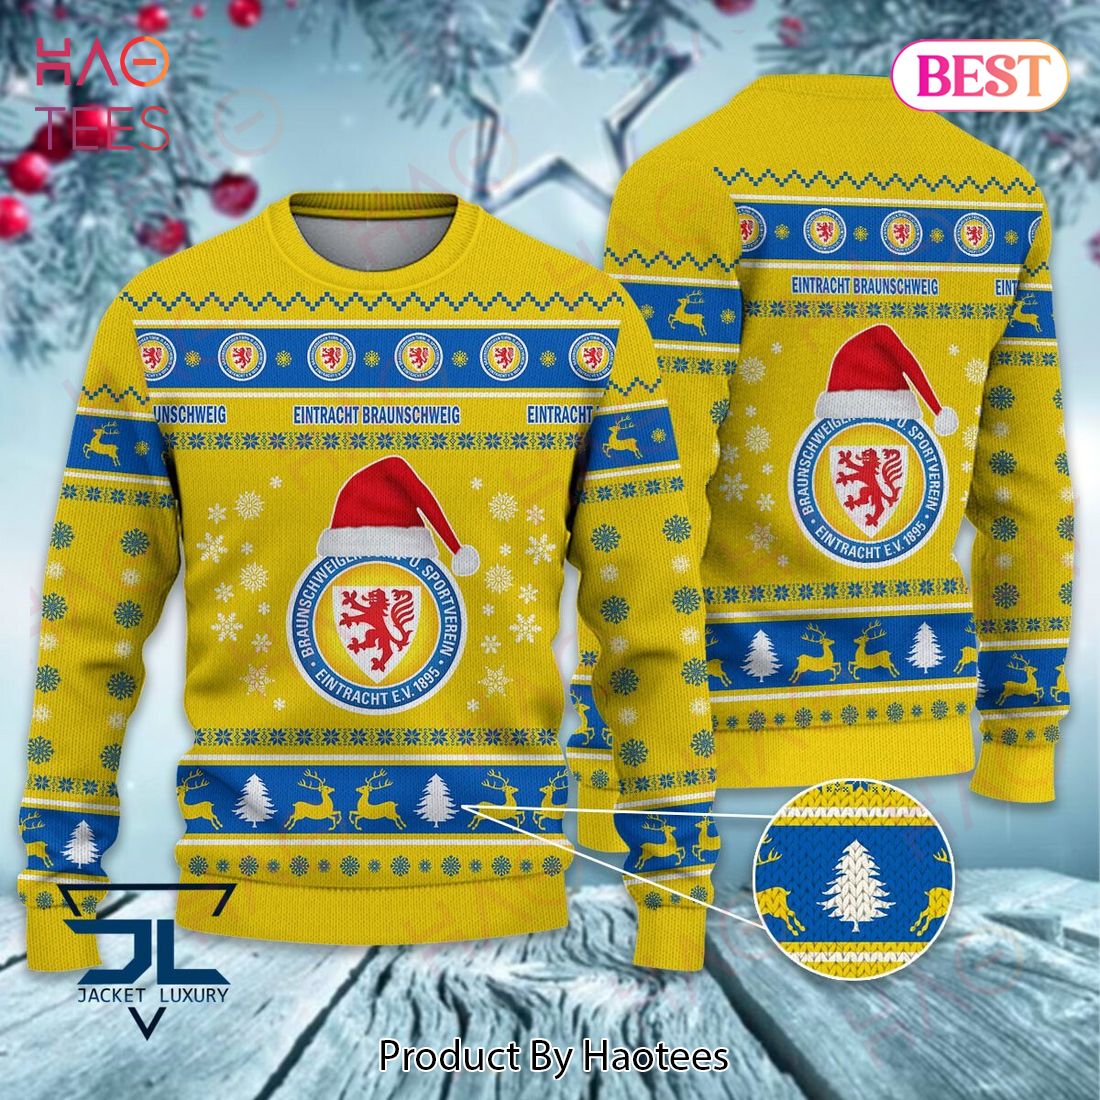 HOT Eintracht Braunschweig Blue Mix Gold Christmas Luxury Brand Sweater Limited Edition